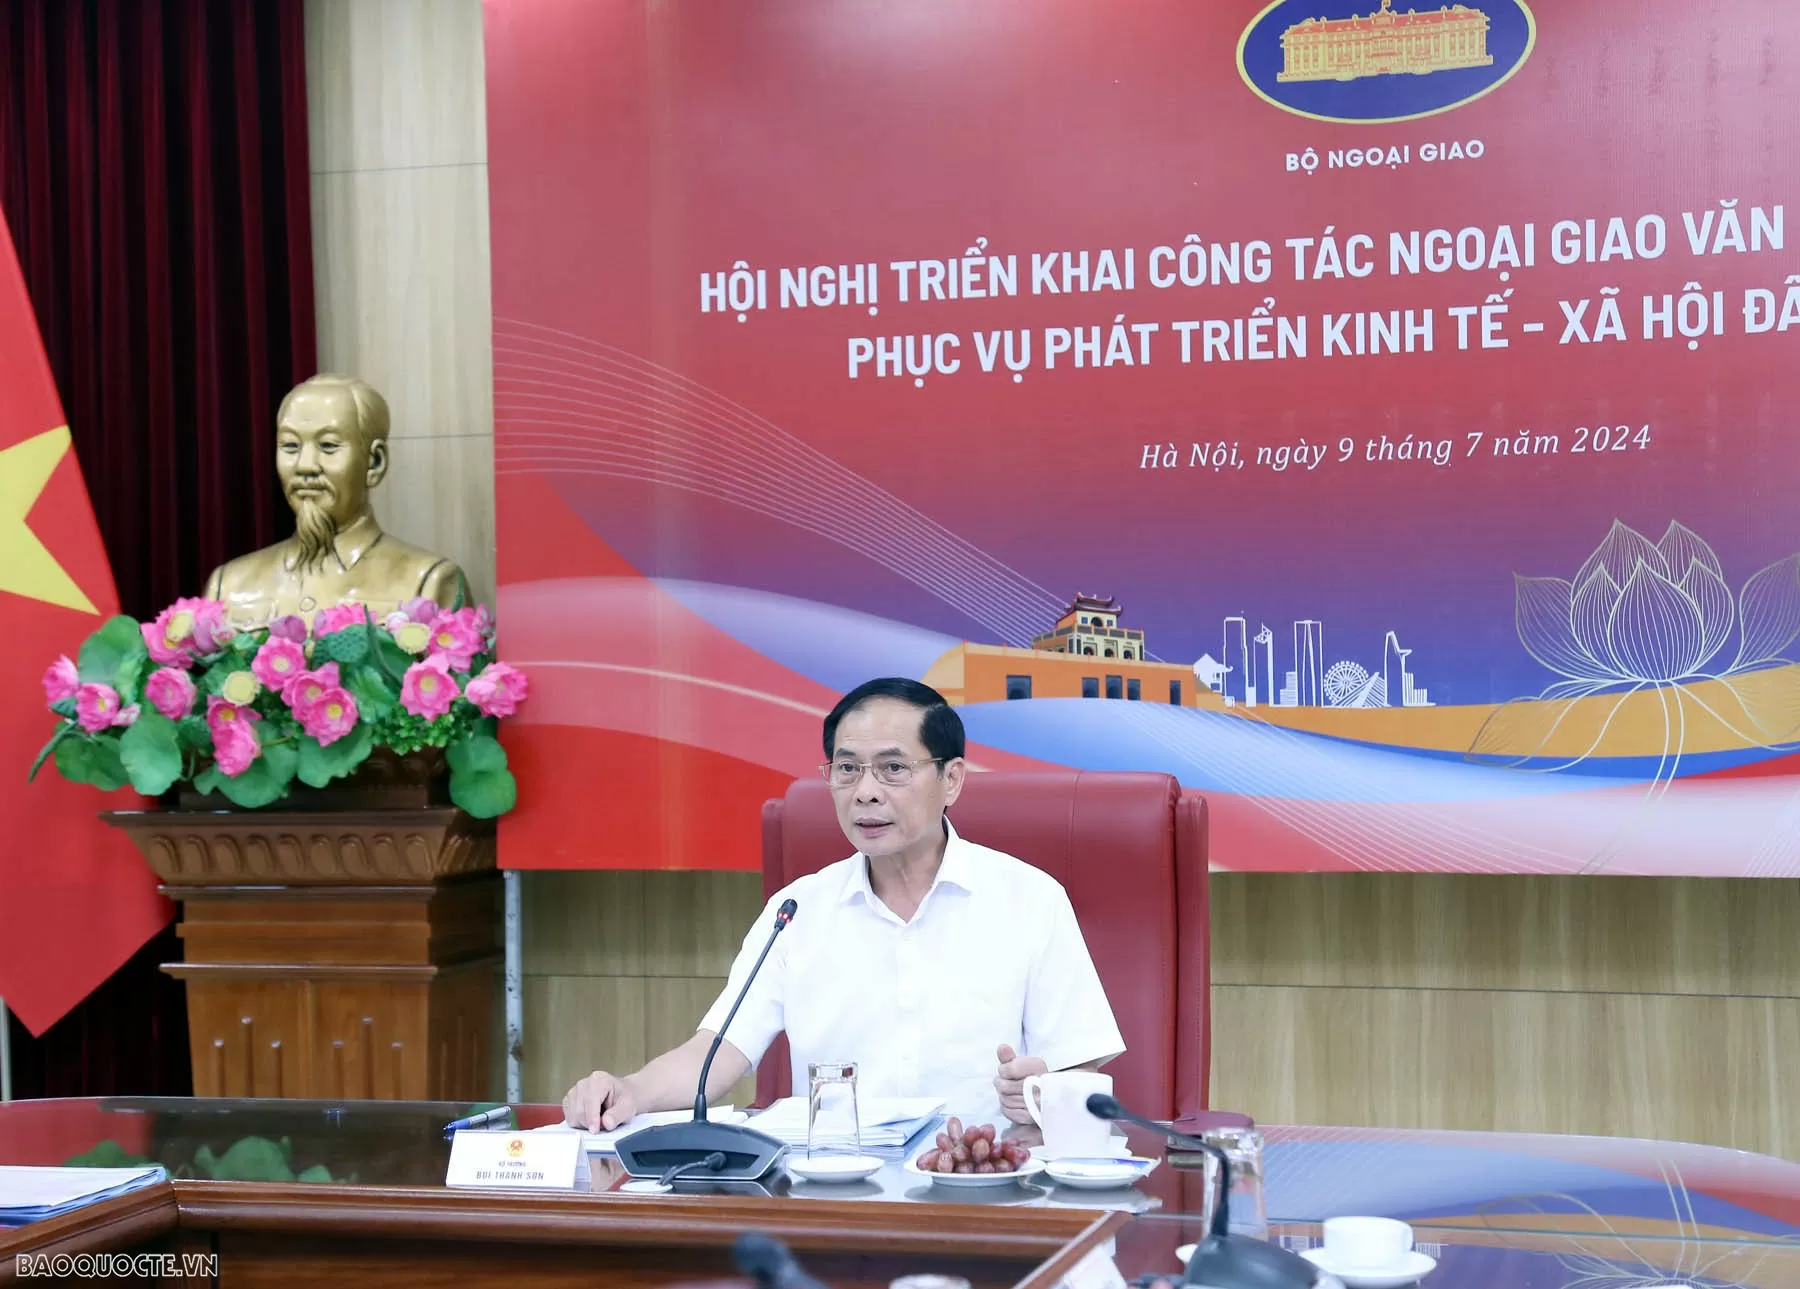 Bộ trưởng Ngoại giao Bùi Thanh Sơn chủ trì Hội nghị triển khai công tác Ngoại giao văn hóa năm 2024